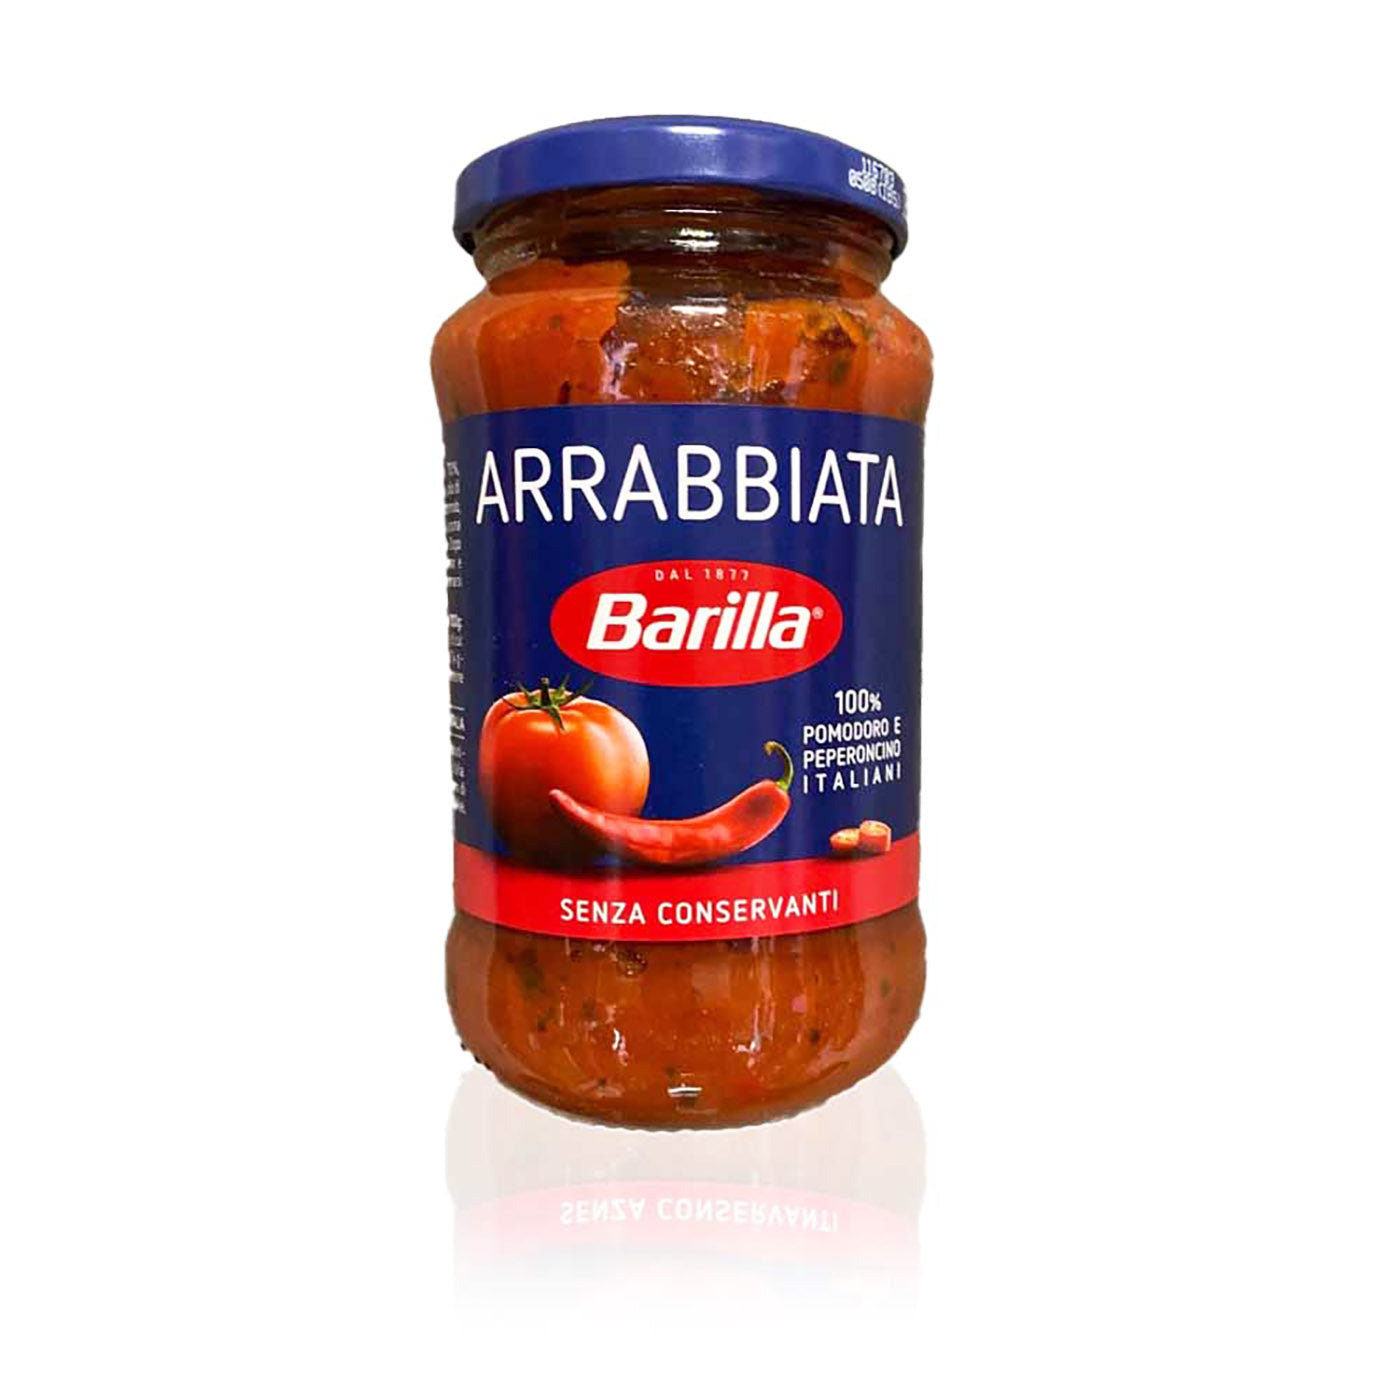 BARILLA - Arrabbiata -0,4kg